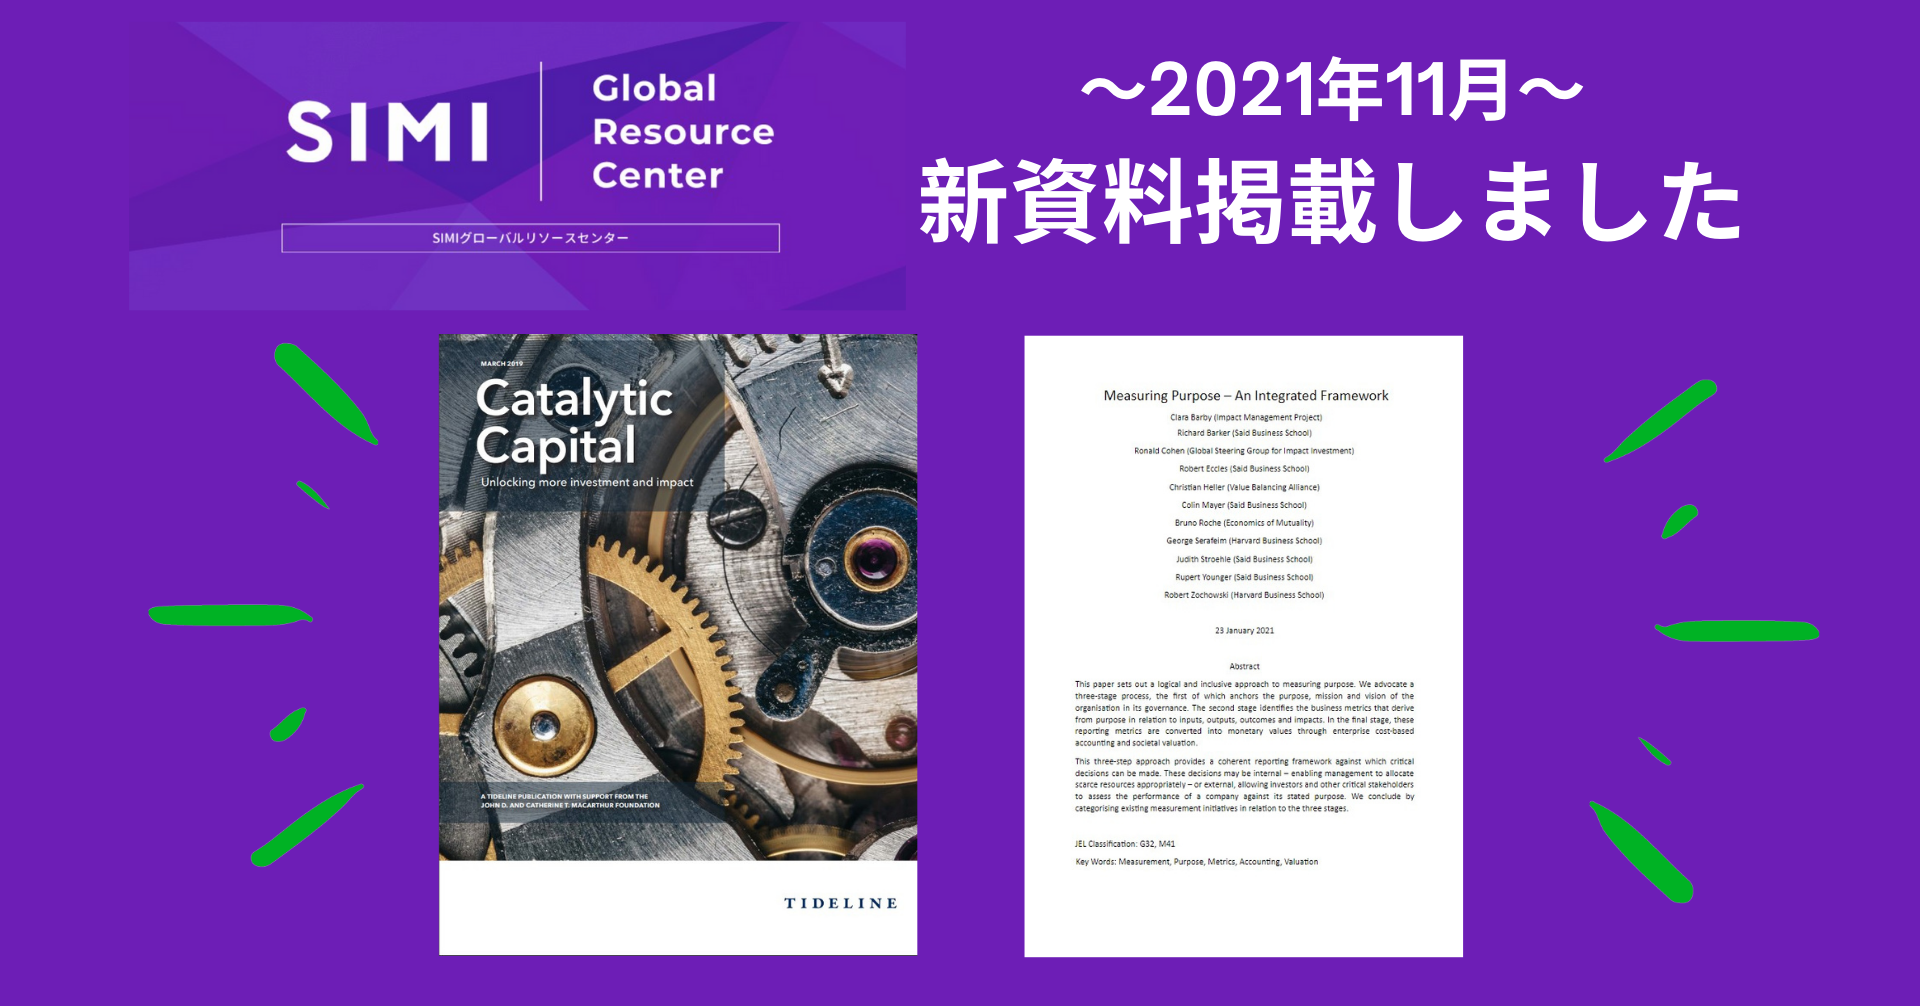 グローバルリソースセンターにMeasuring Purpose、Catalytic Capital 関連の新資料を追加しました